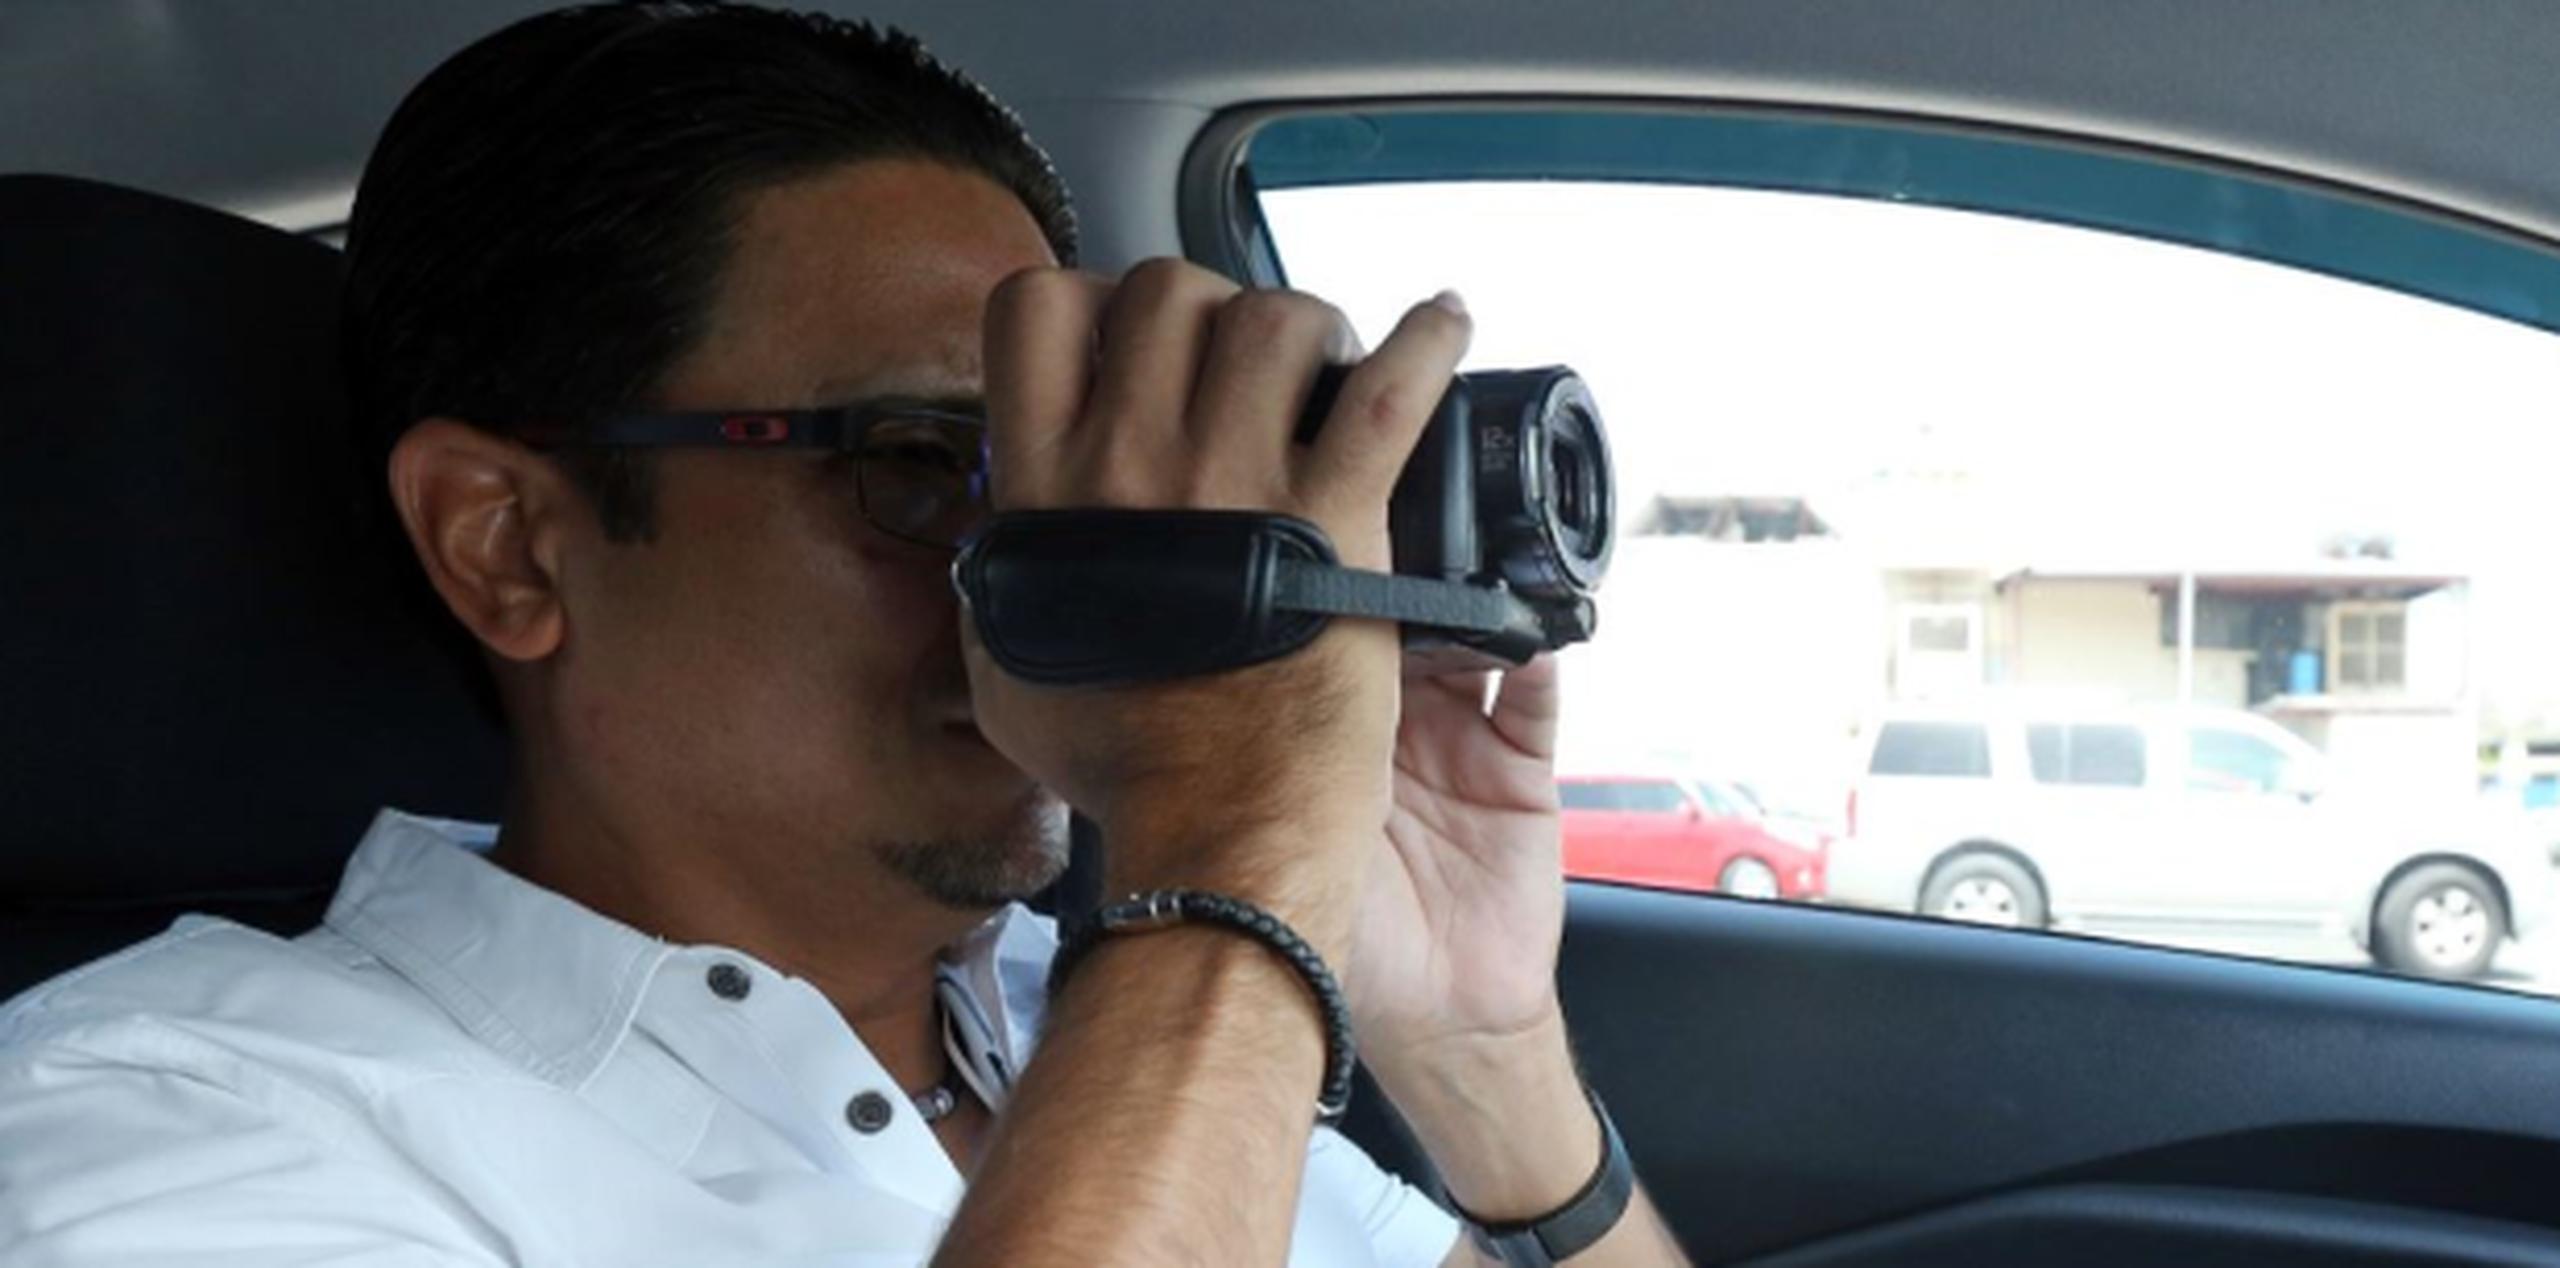 El detective Luis Torres usa todos los recursos tecnológicos para capturar a los posibles infieles. (juan.martinez@gfrmedia.com)